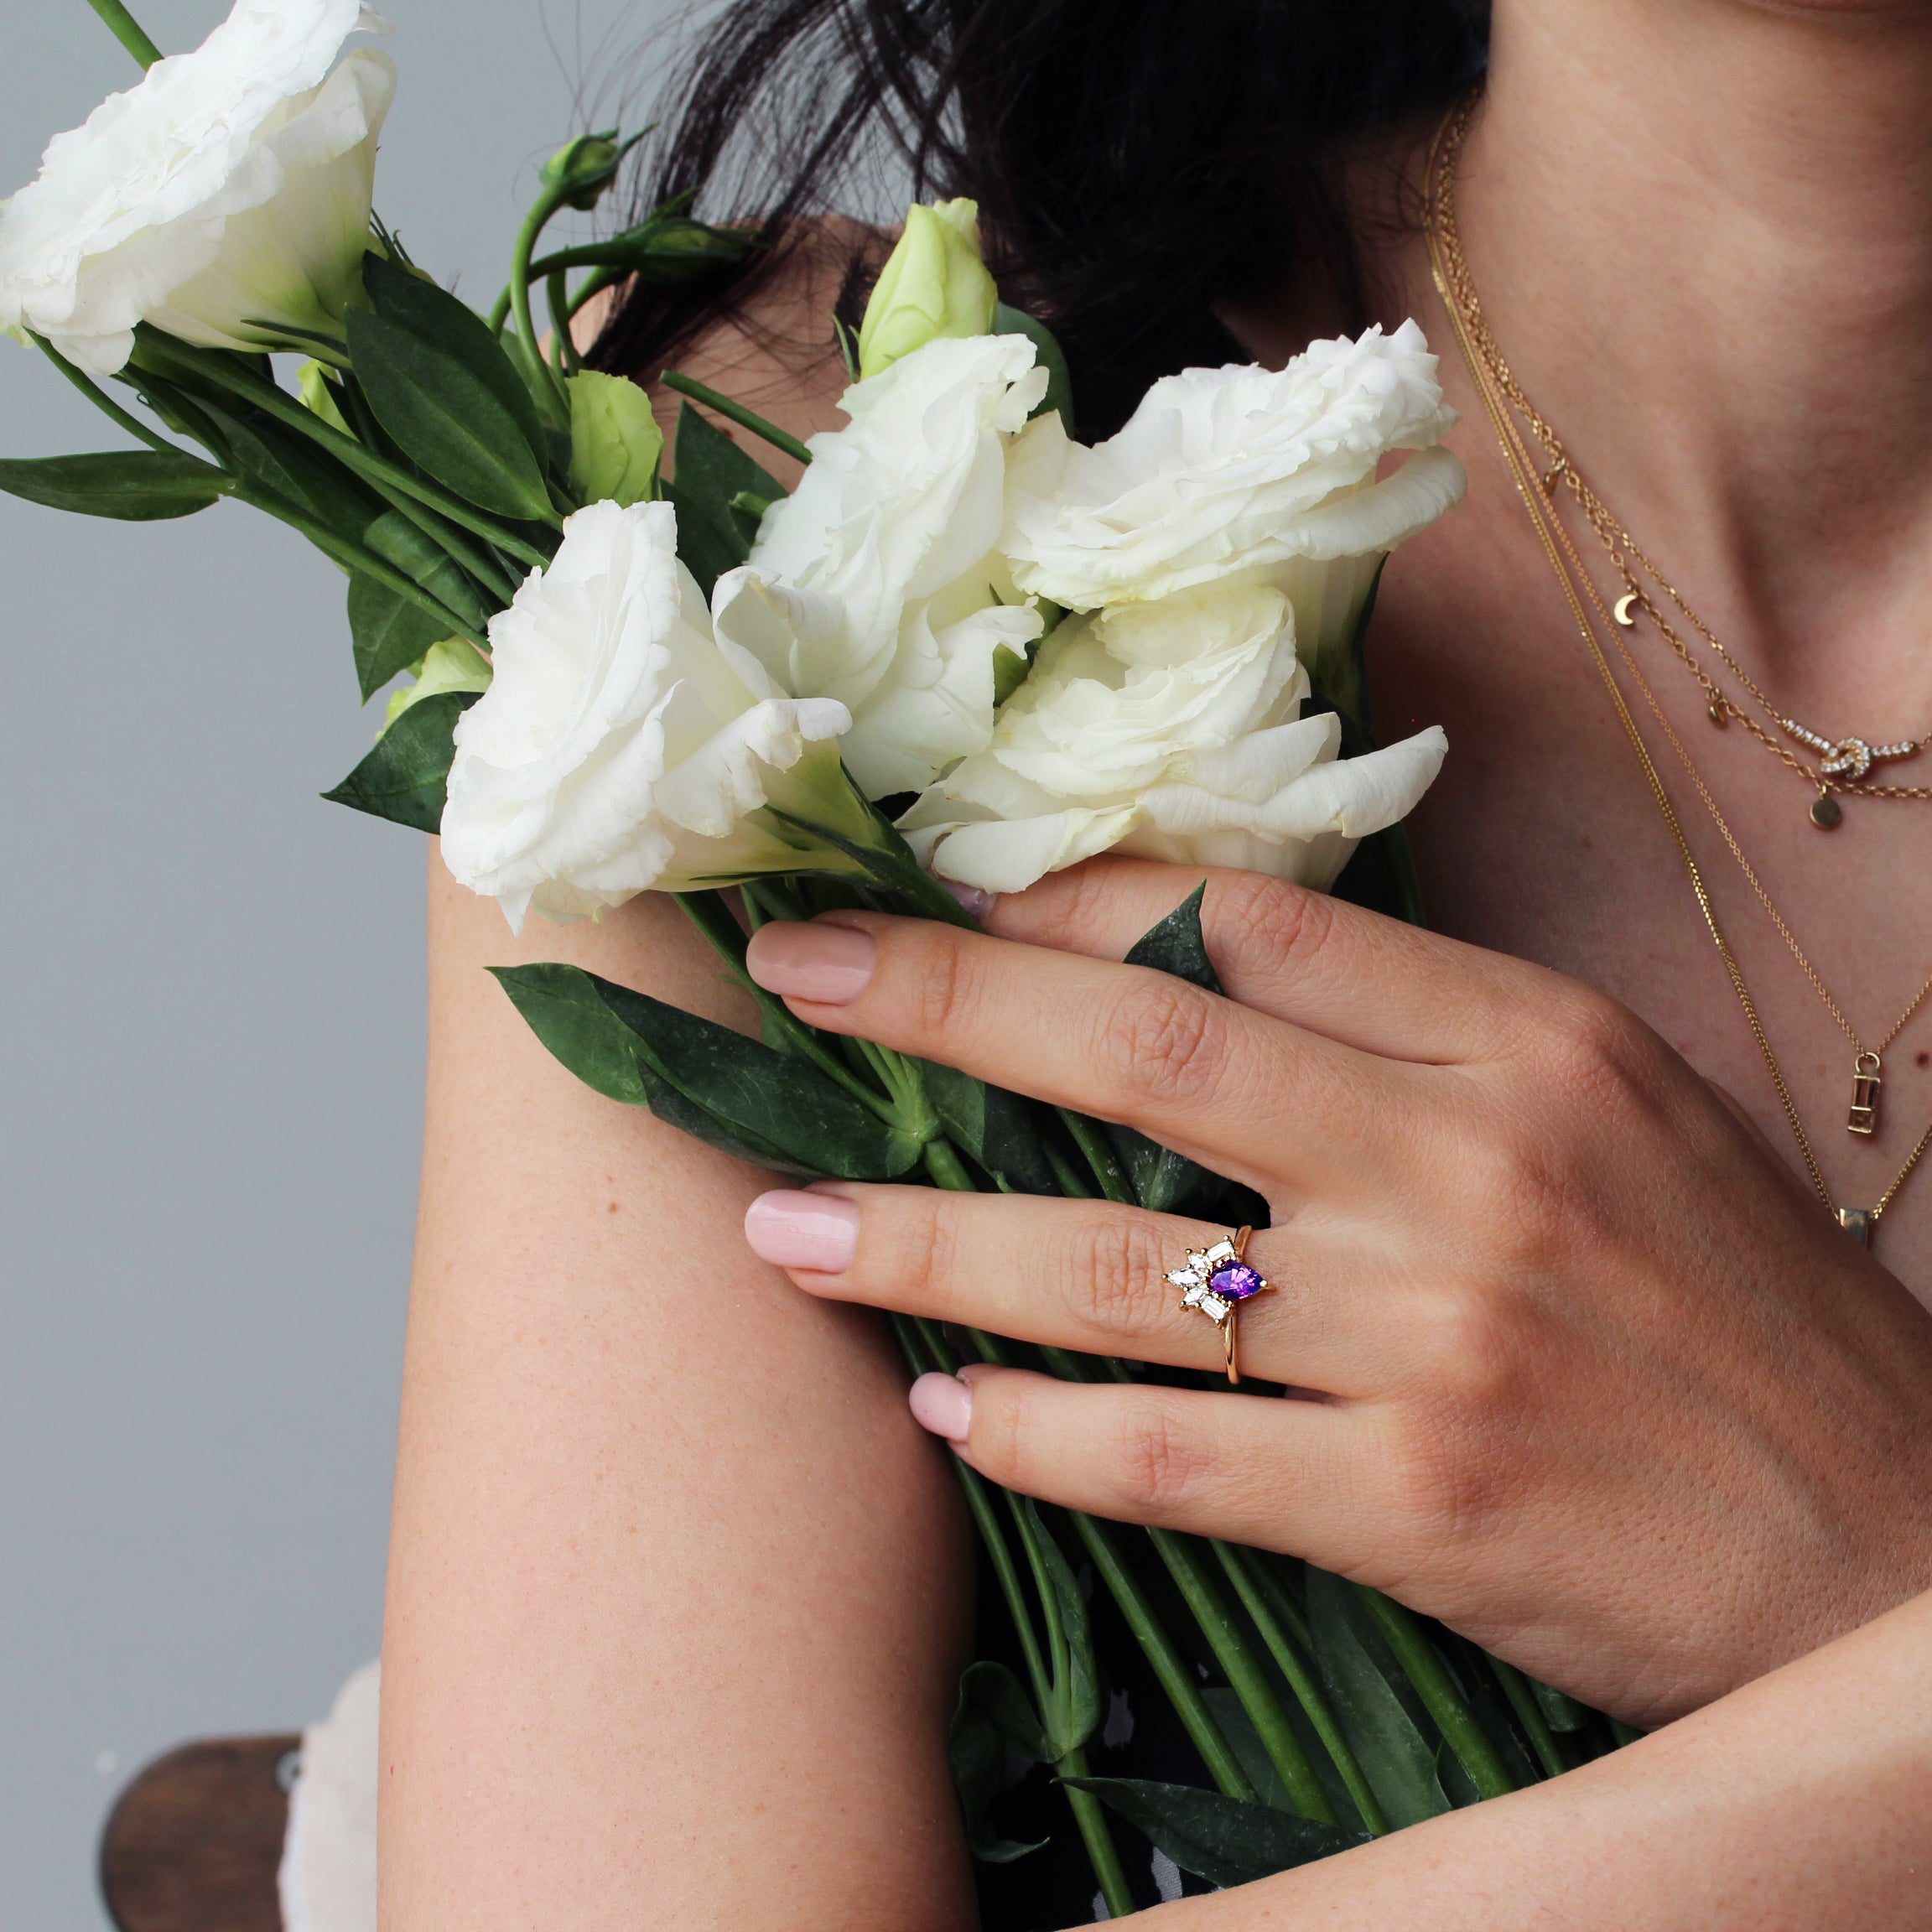 Purple pear Sapphire & Diamonds Engagement Ring, Gatsby - 14K Yellow gold ring, Size 6.5 ,ready to ship - sillyshinydiamonds